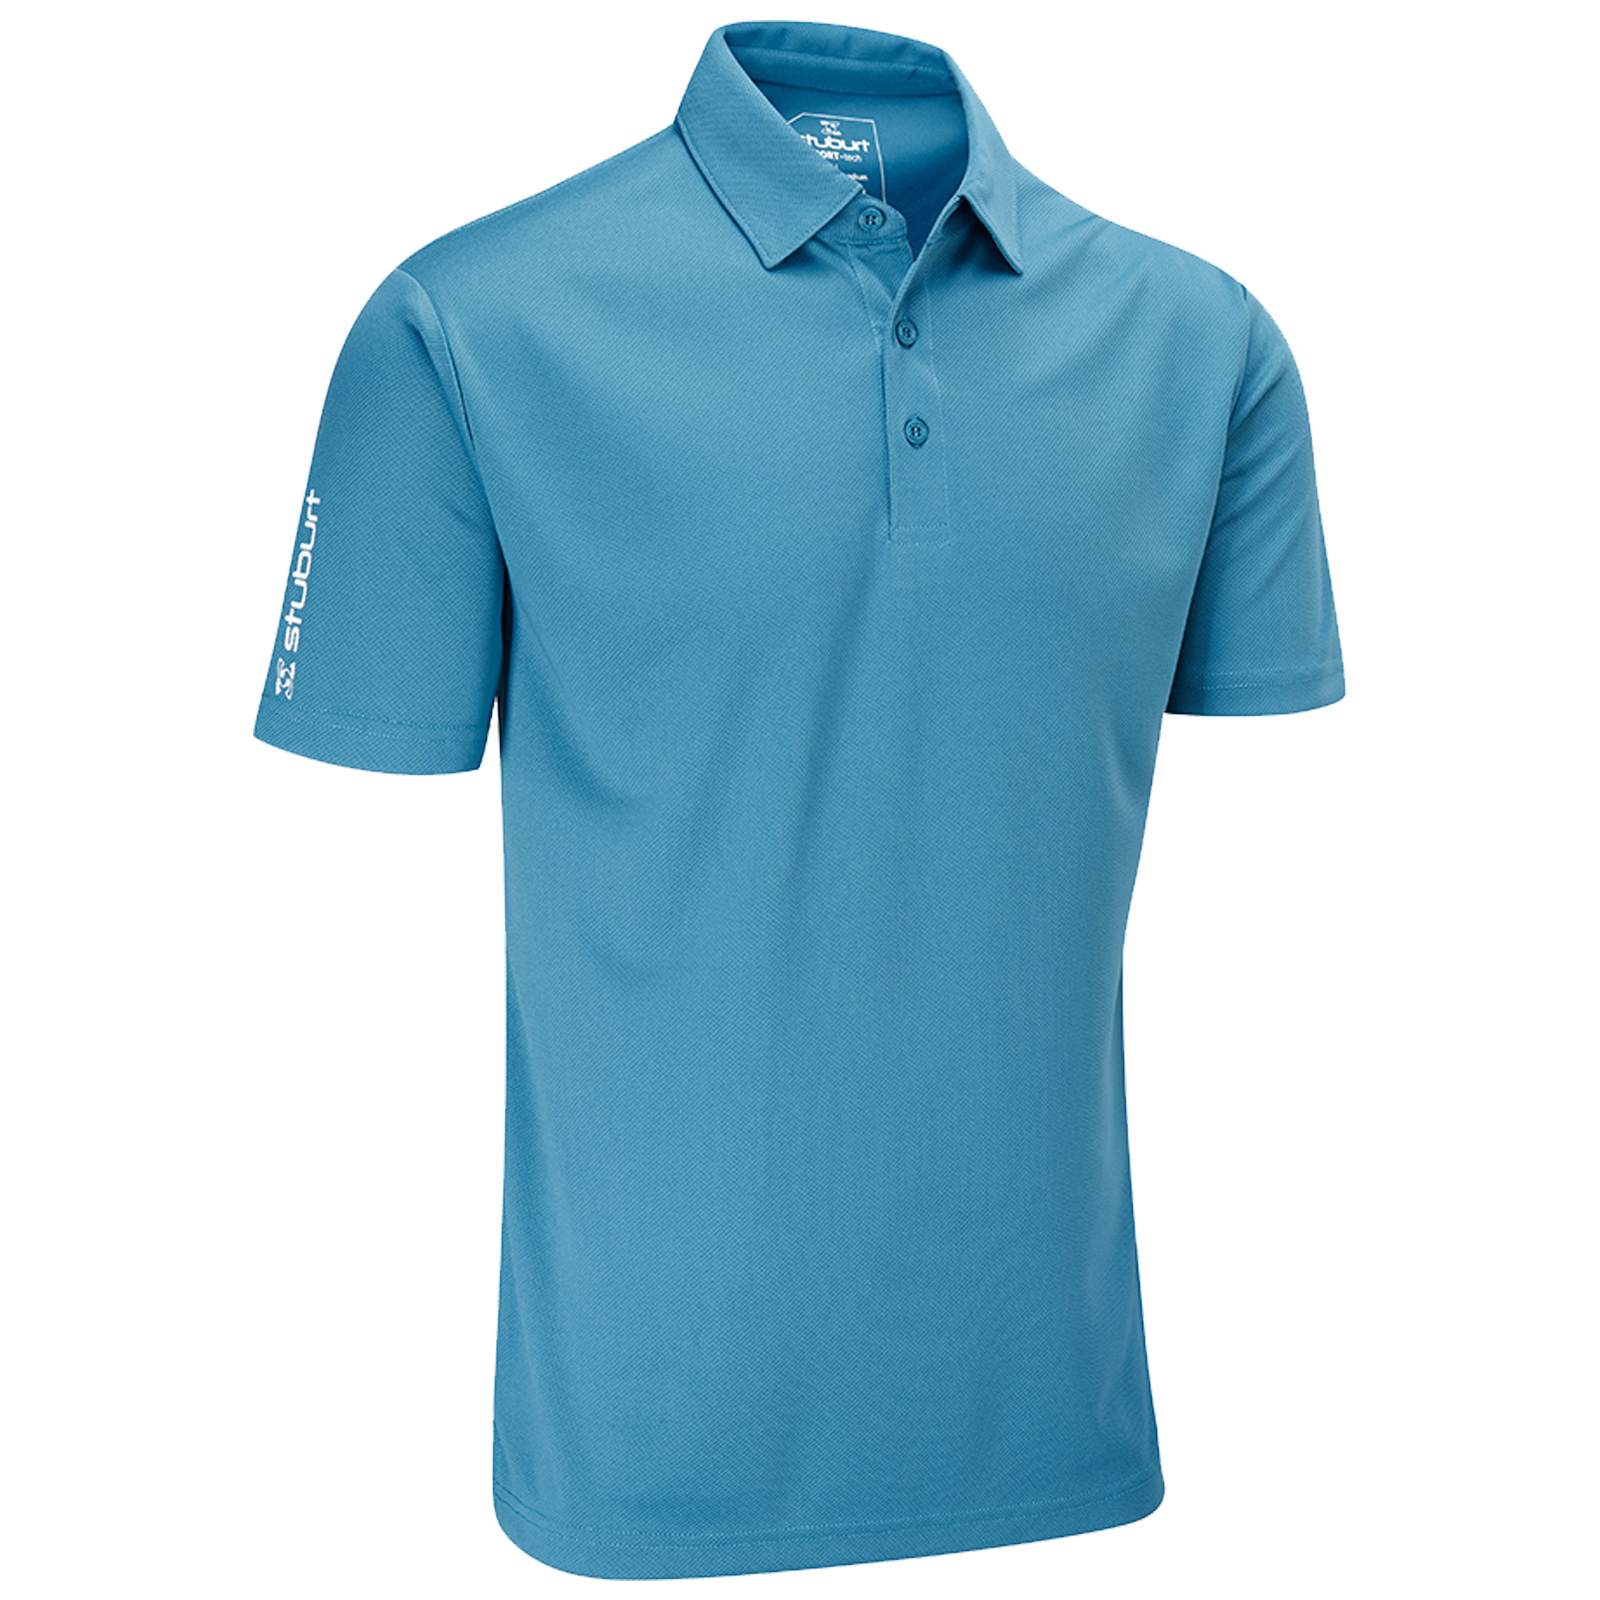 2021 Stuburt Mens Sport Tech Polo Shirt - Golf Performance Top Plain ...